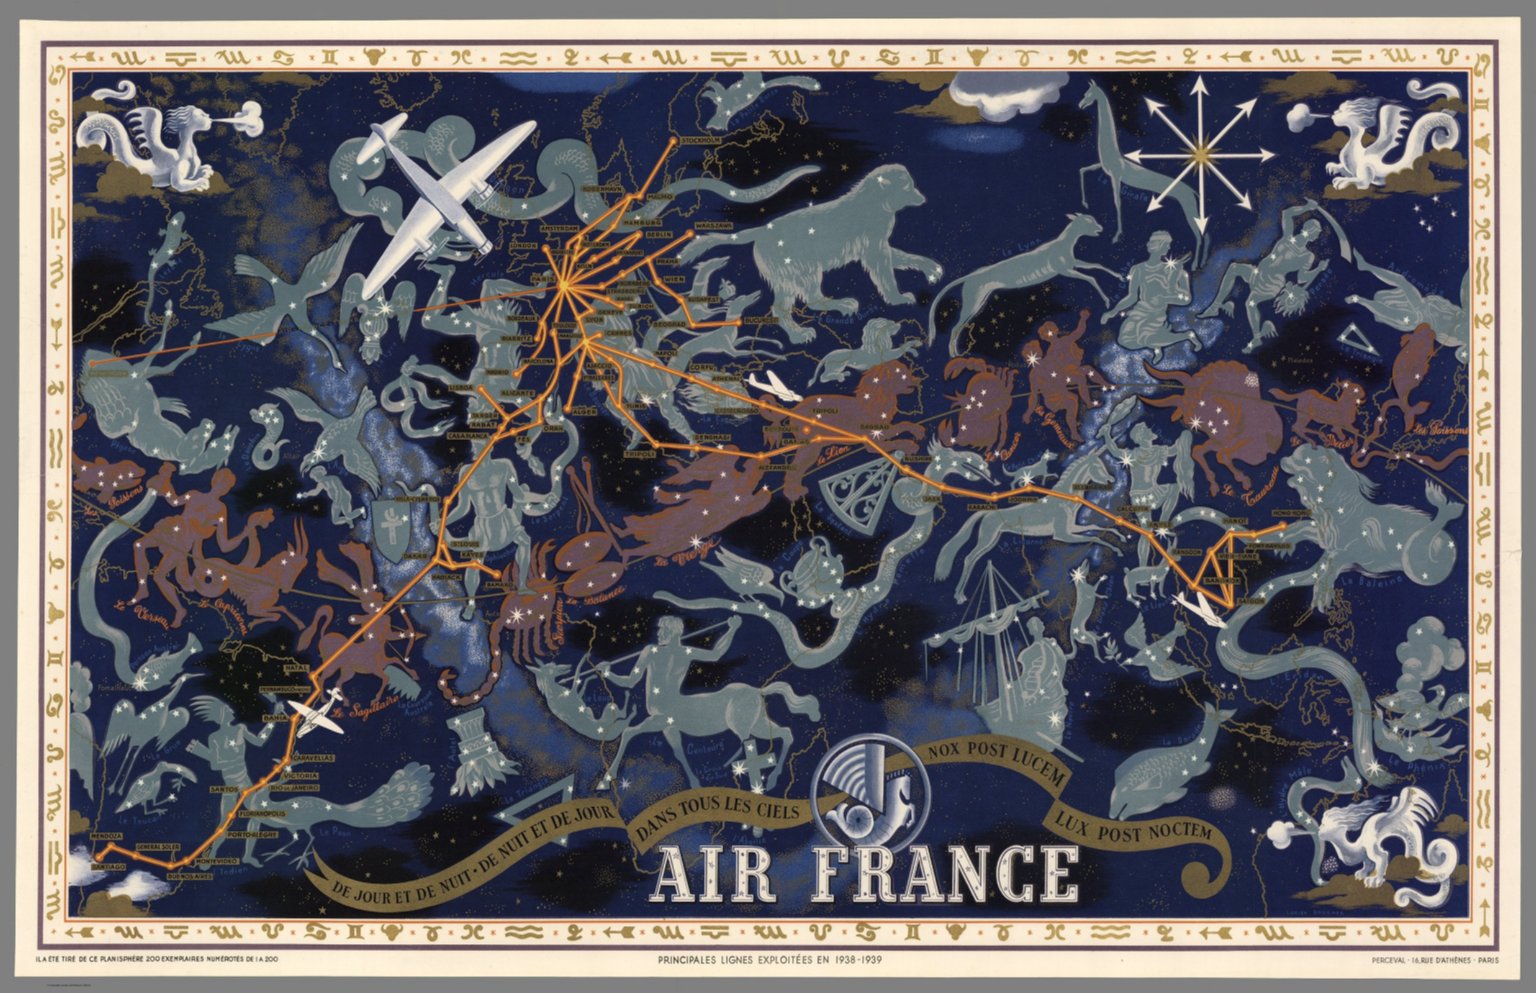 Air France : De nuit et de jour dans tous les ciels, 1939 autore: Lucien Boucher editore: Perceval (Francia)